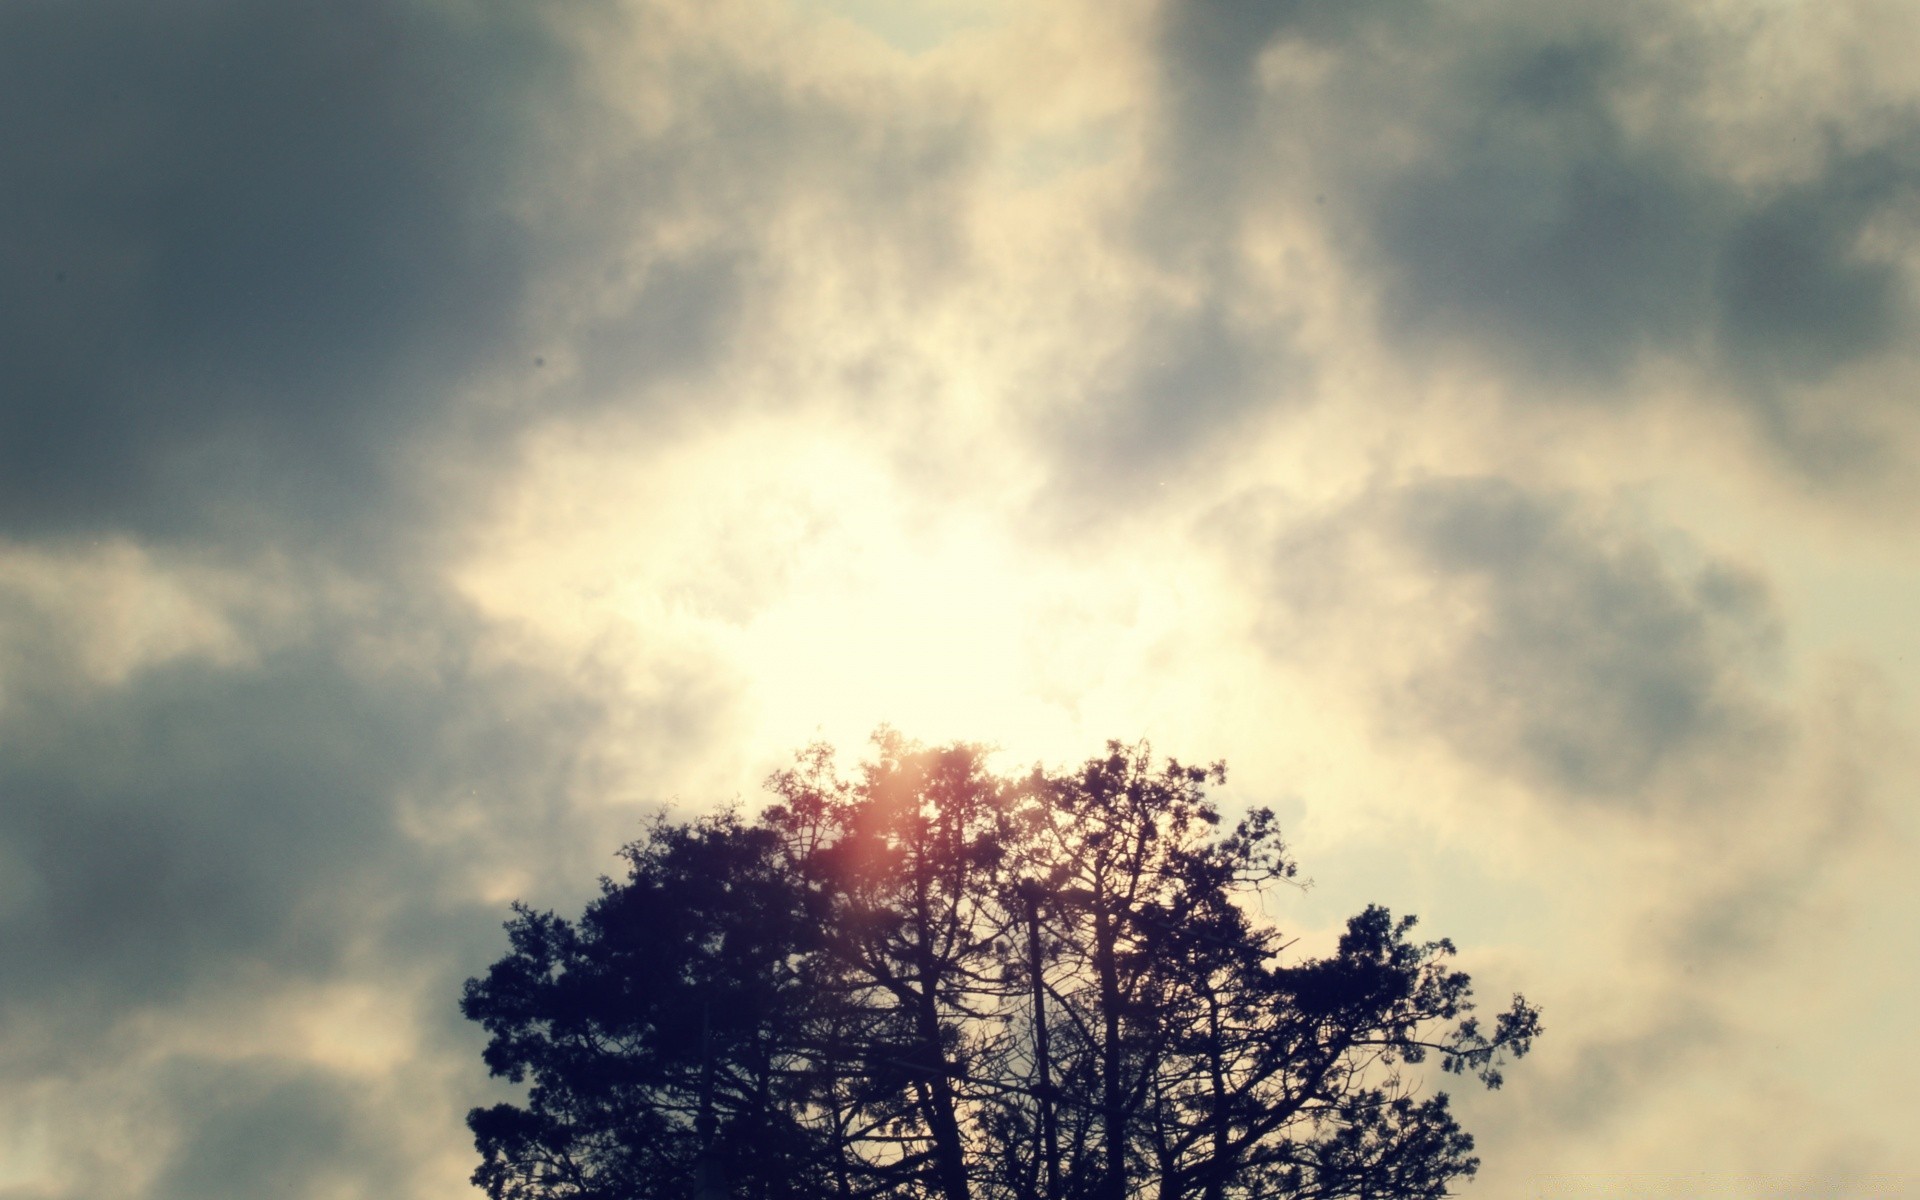 винтаж природа небо пейзаж погода на открытом воздухе солнце хорошую погоду закат муди свет осень туман рассвет лето дерево метеорология небо